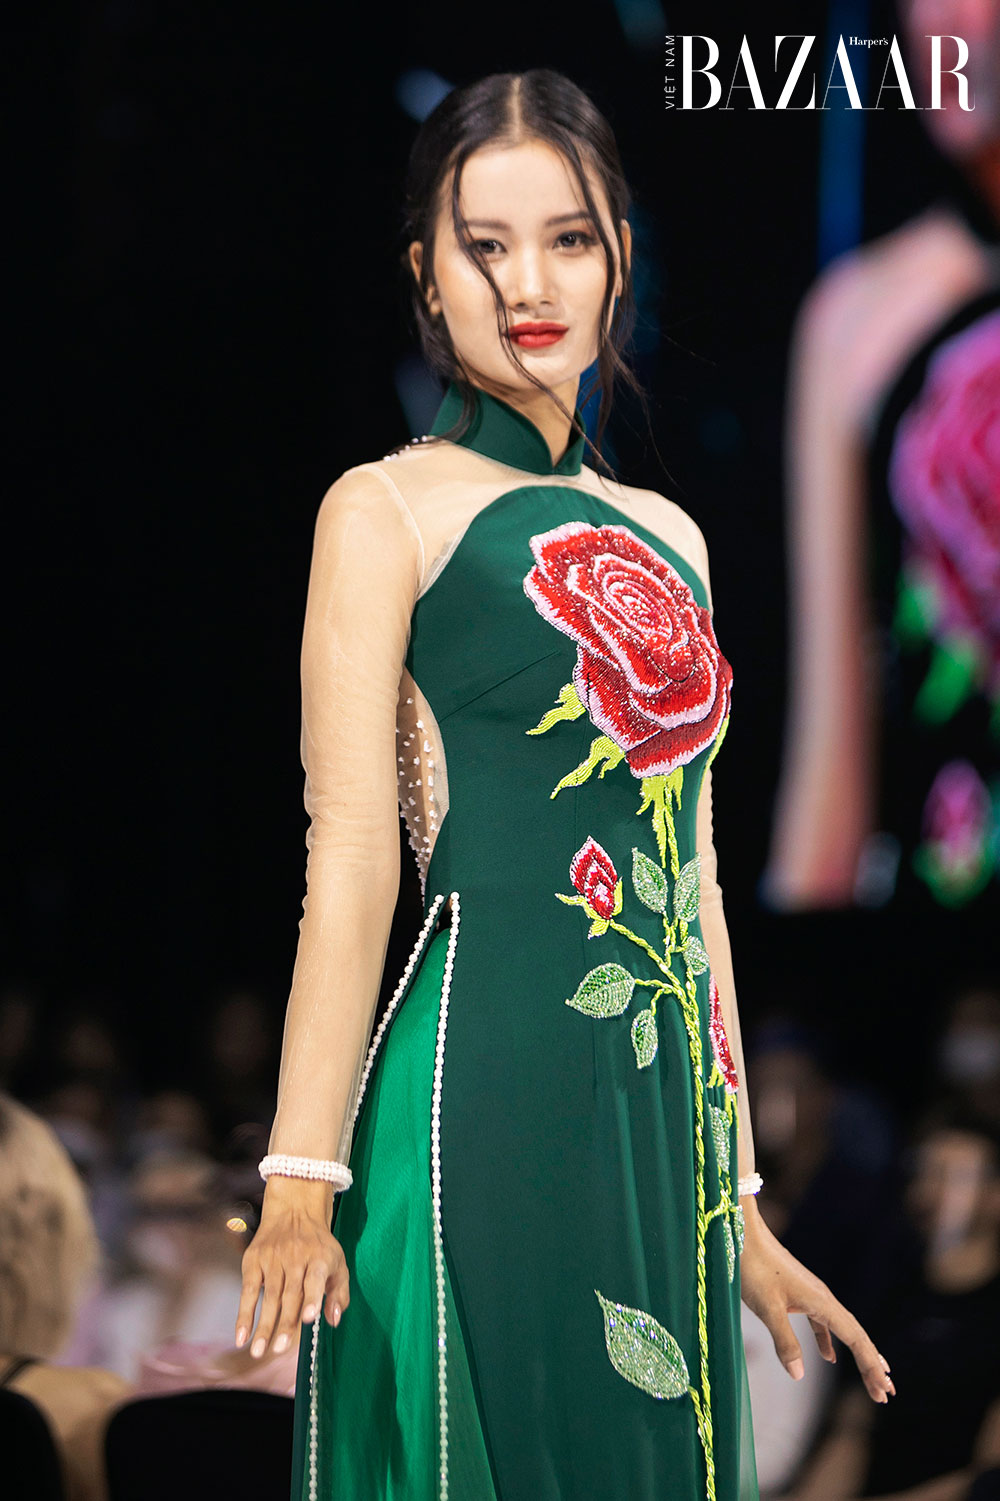 Người mẫu Hương Ly - Quán quân Vietnam's Next Top Model 2015 thướt tha trong thiết kế màu xanh lá với điểm nhấn là bông hoa hồng đỏ rực được đính kết lấp lánh